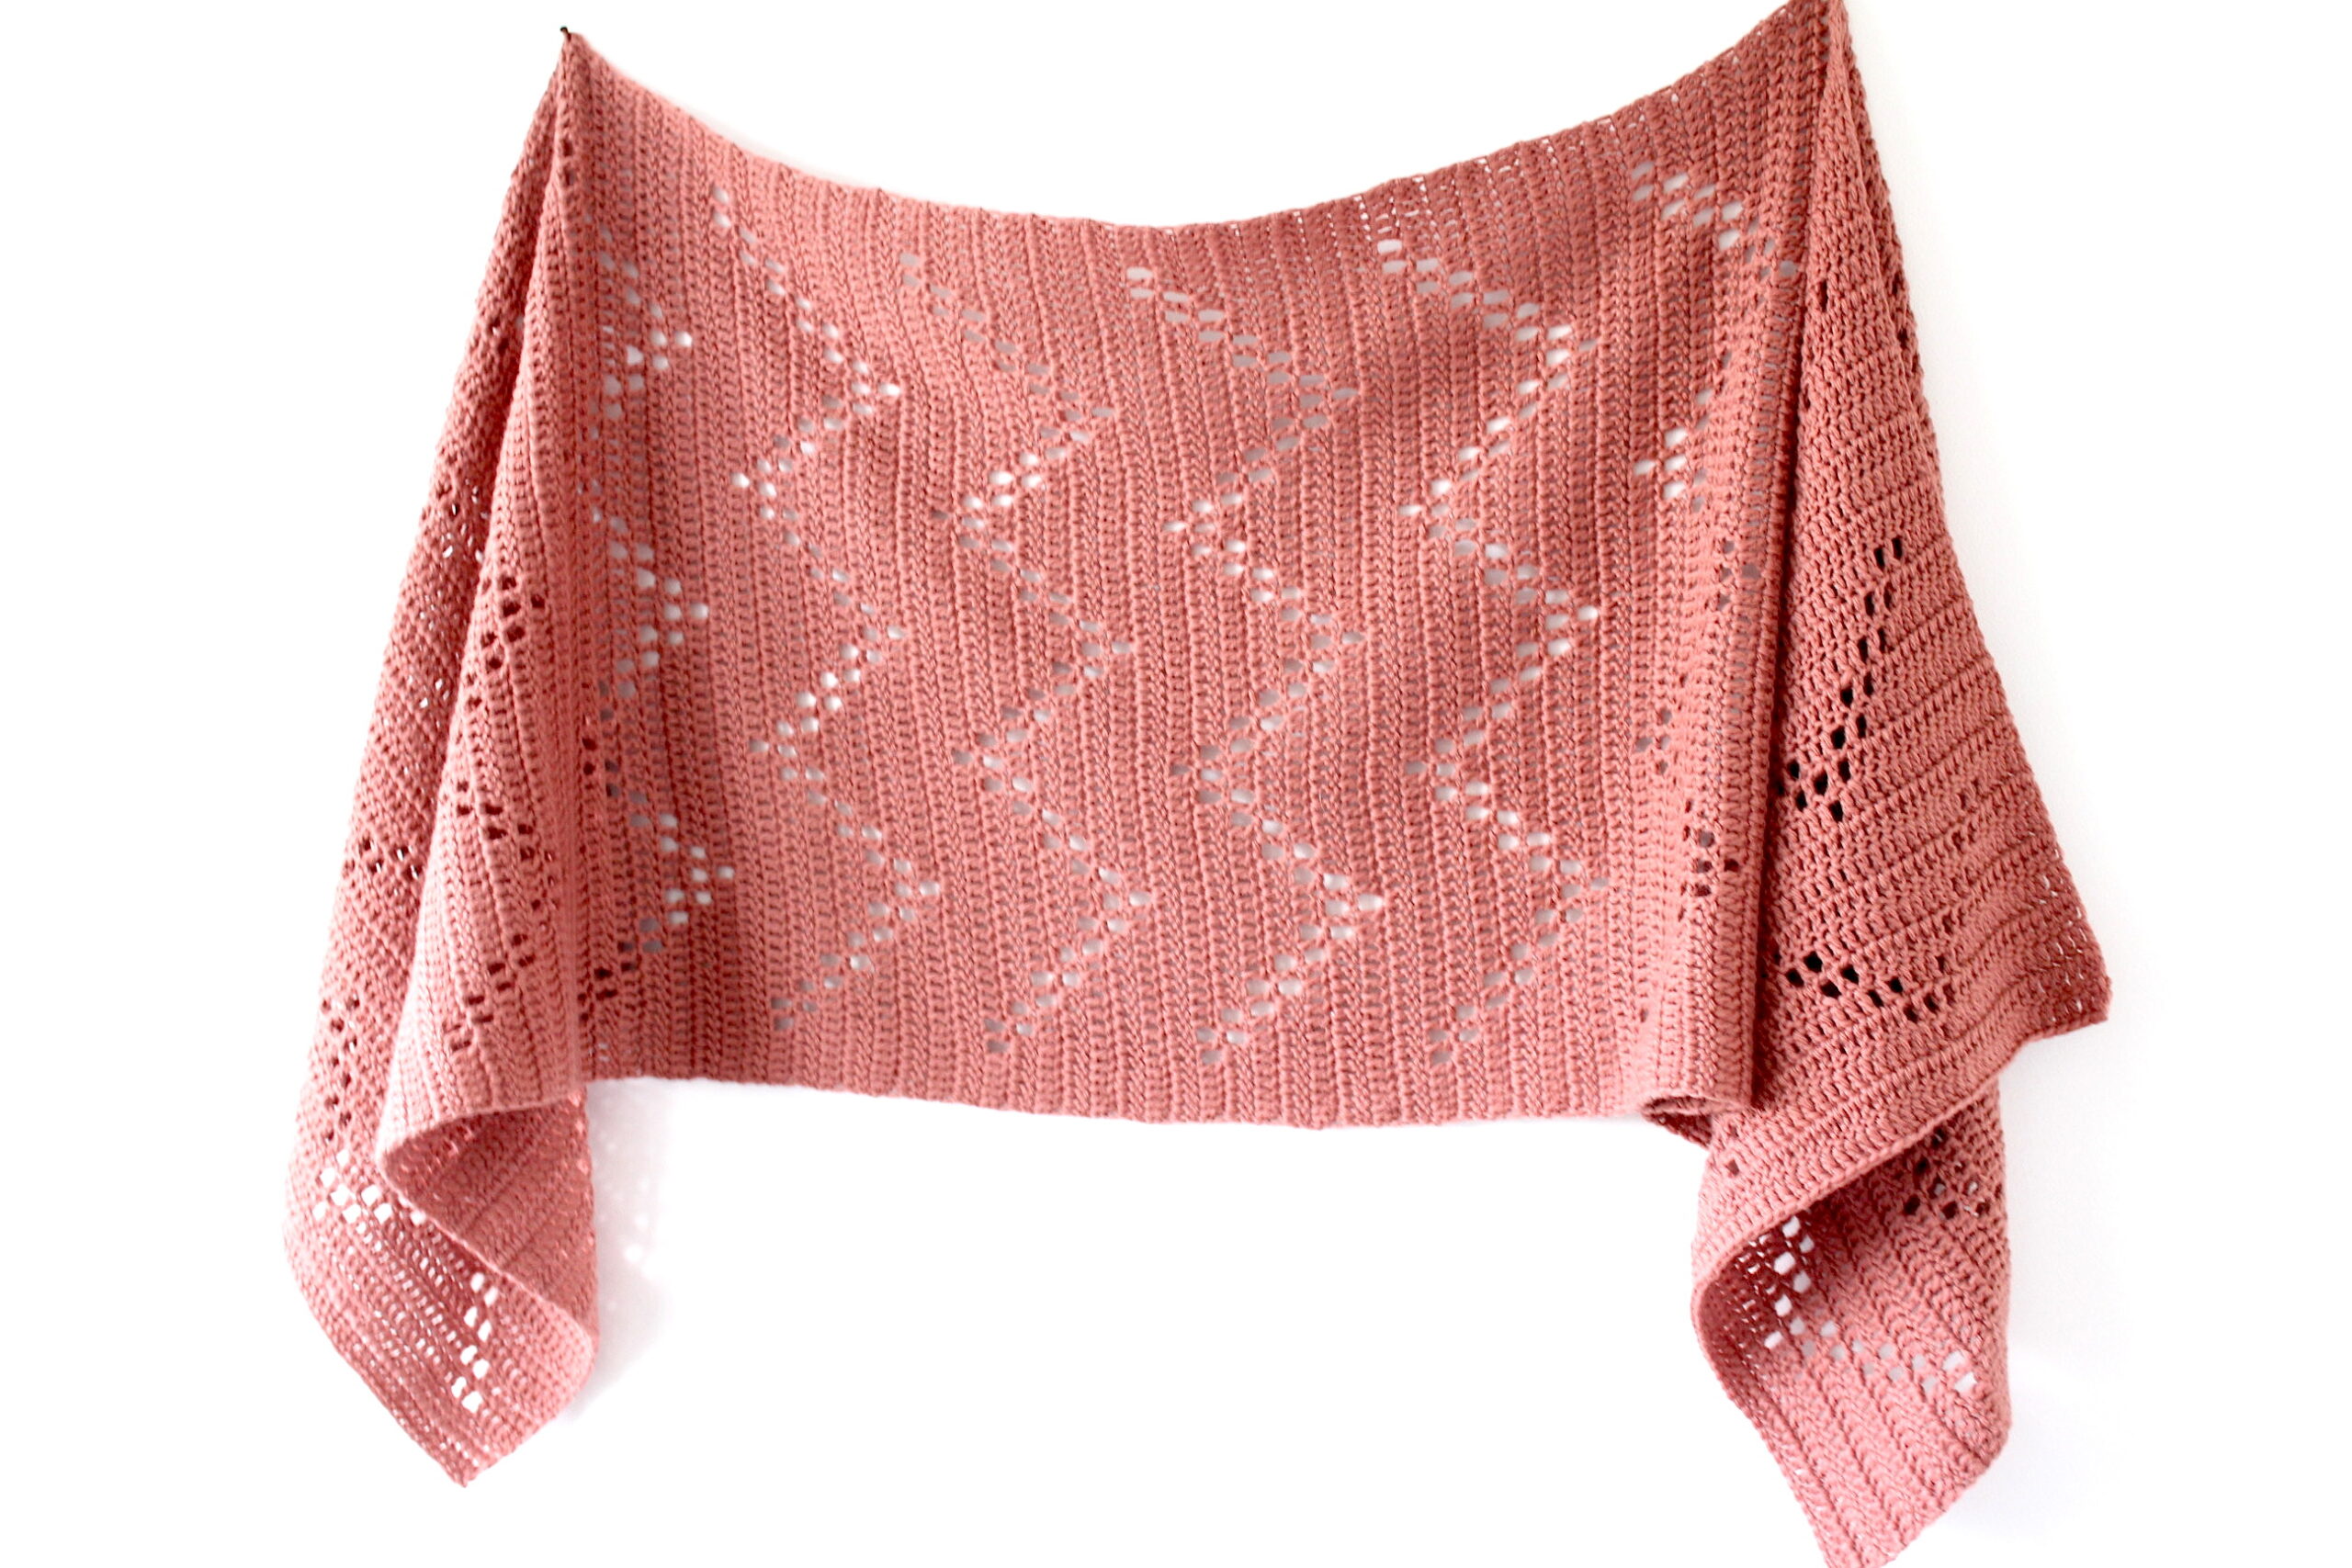 Beginner friendly crochet pattern